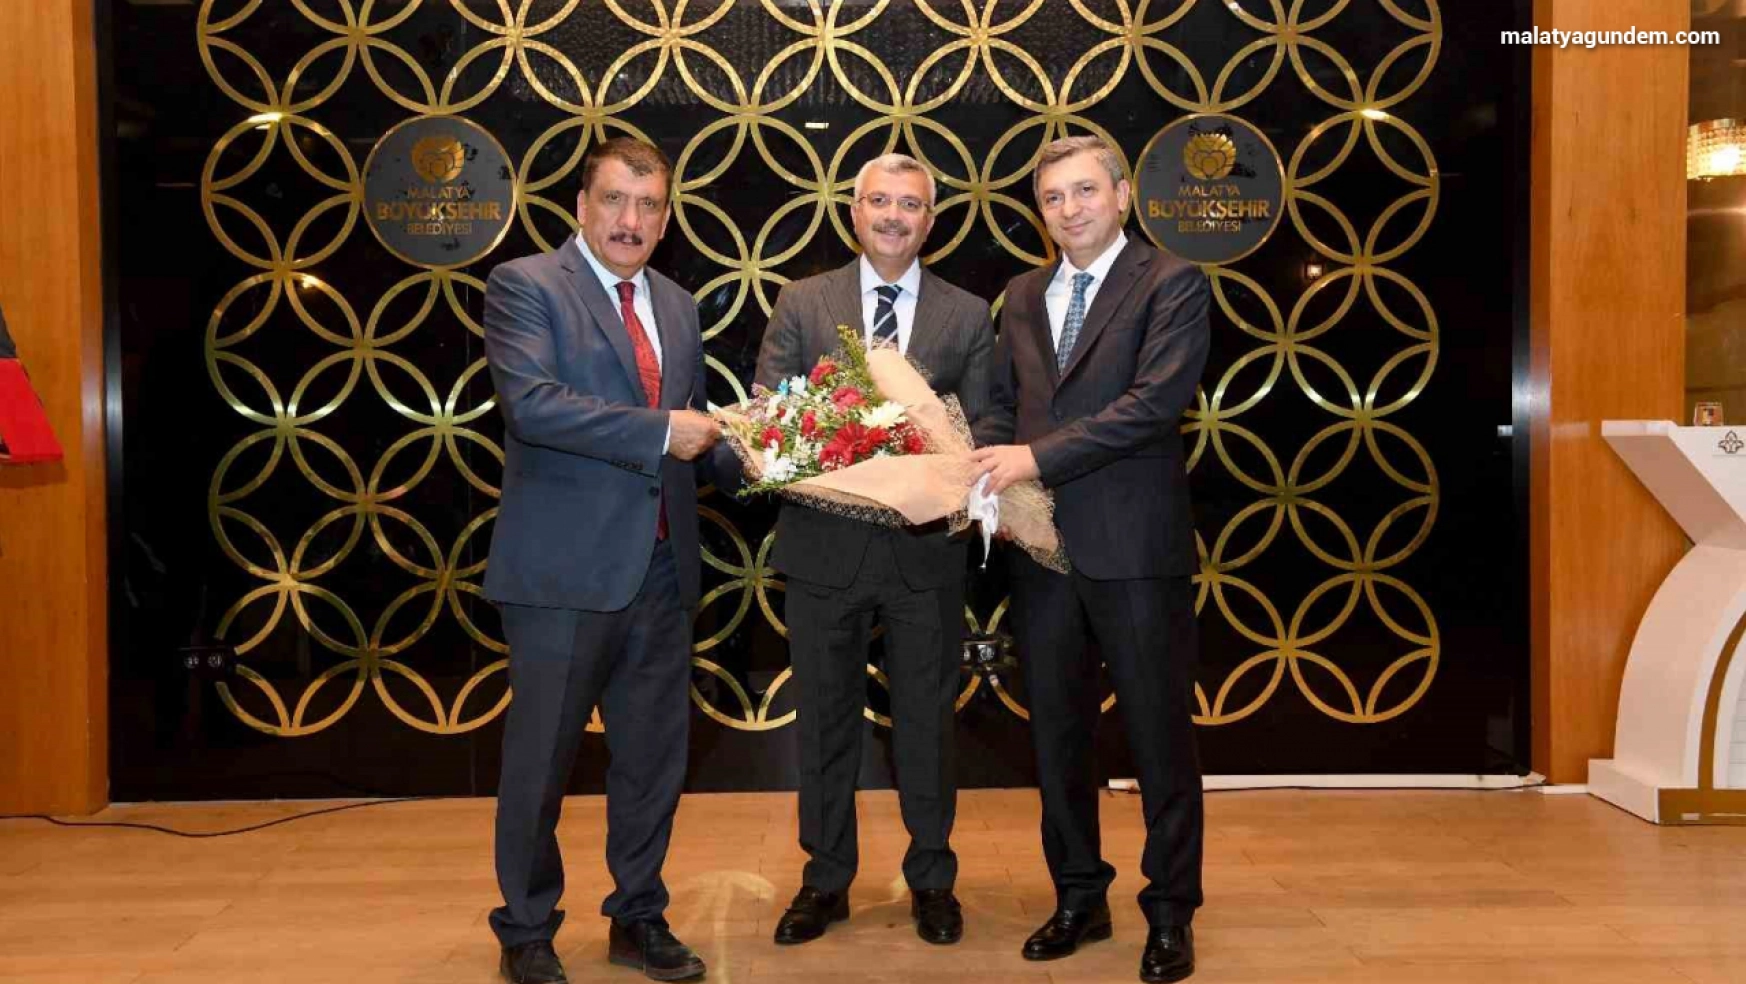 Büyükşehir Belediyesi Genel Sekreteri Noğay'a veda programı düzenlendi